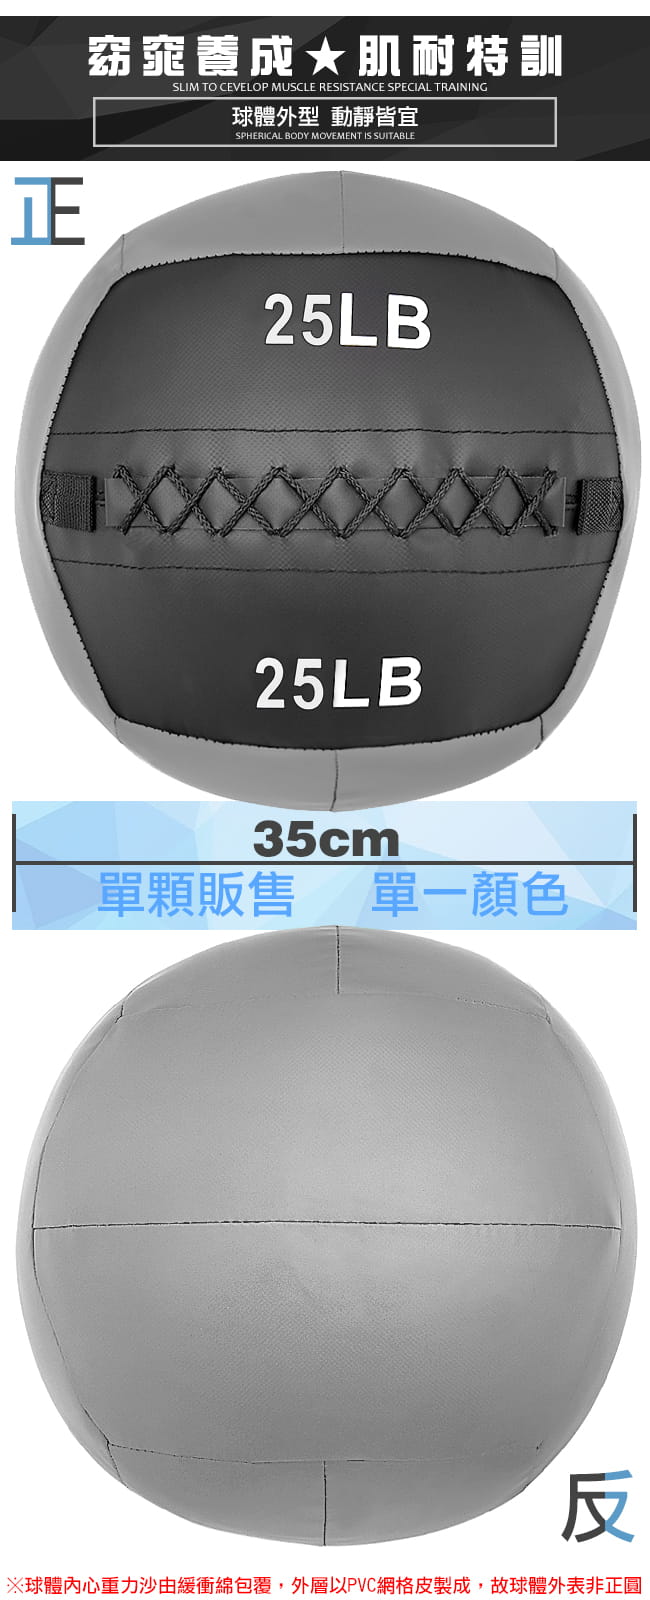 負重力25LB軟式藥球   11.3KG舉重量訓練球 4